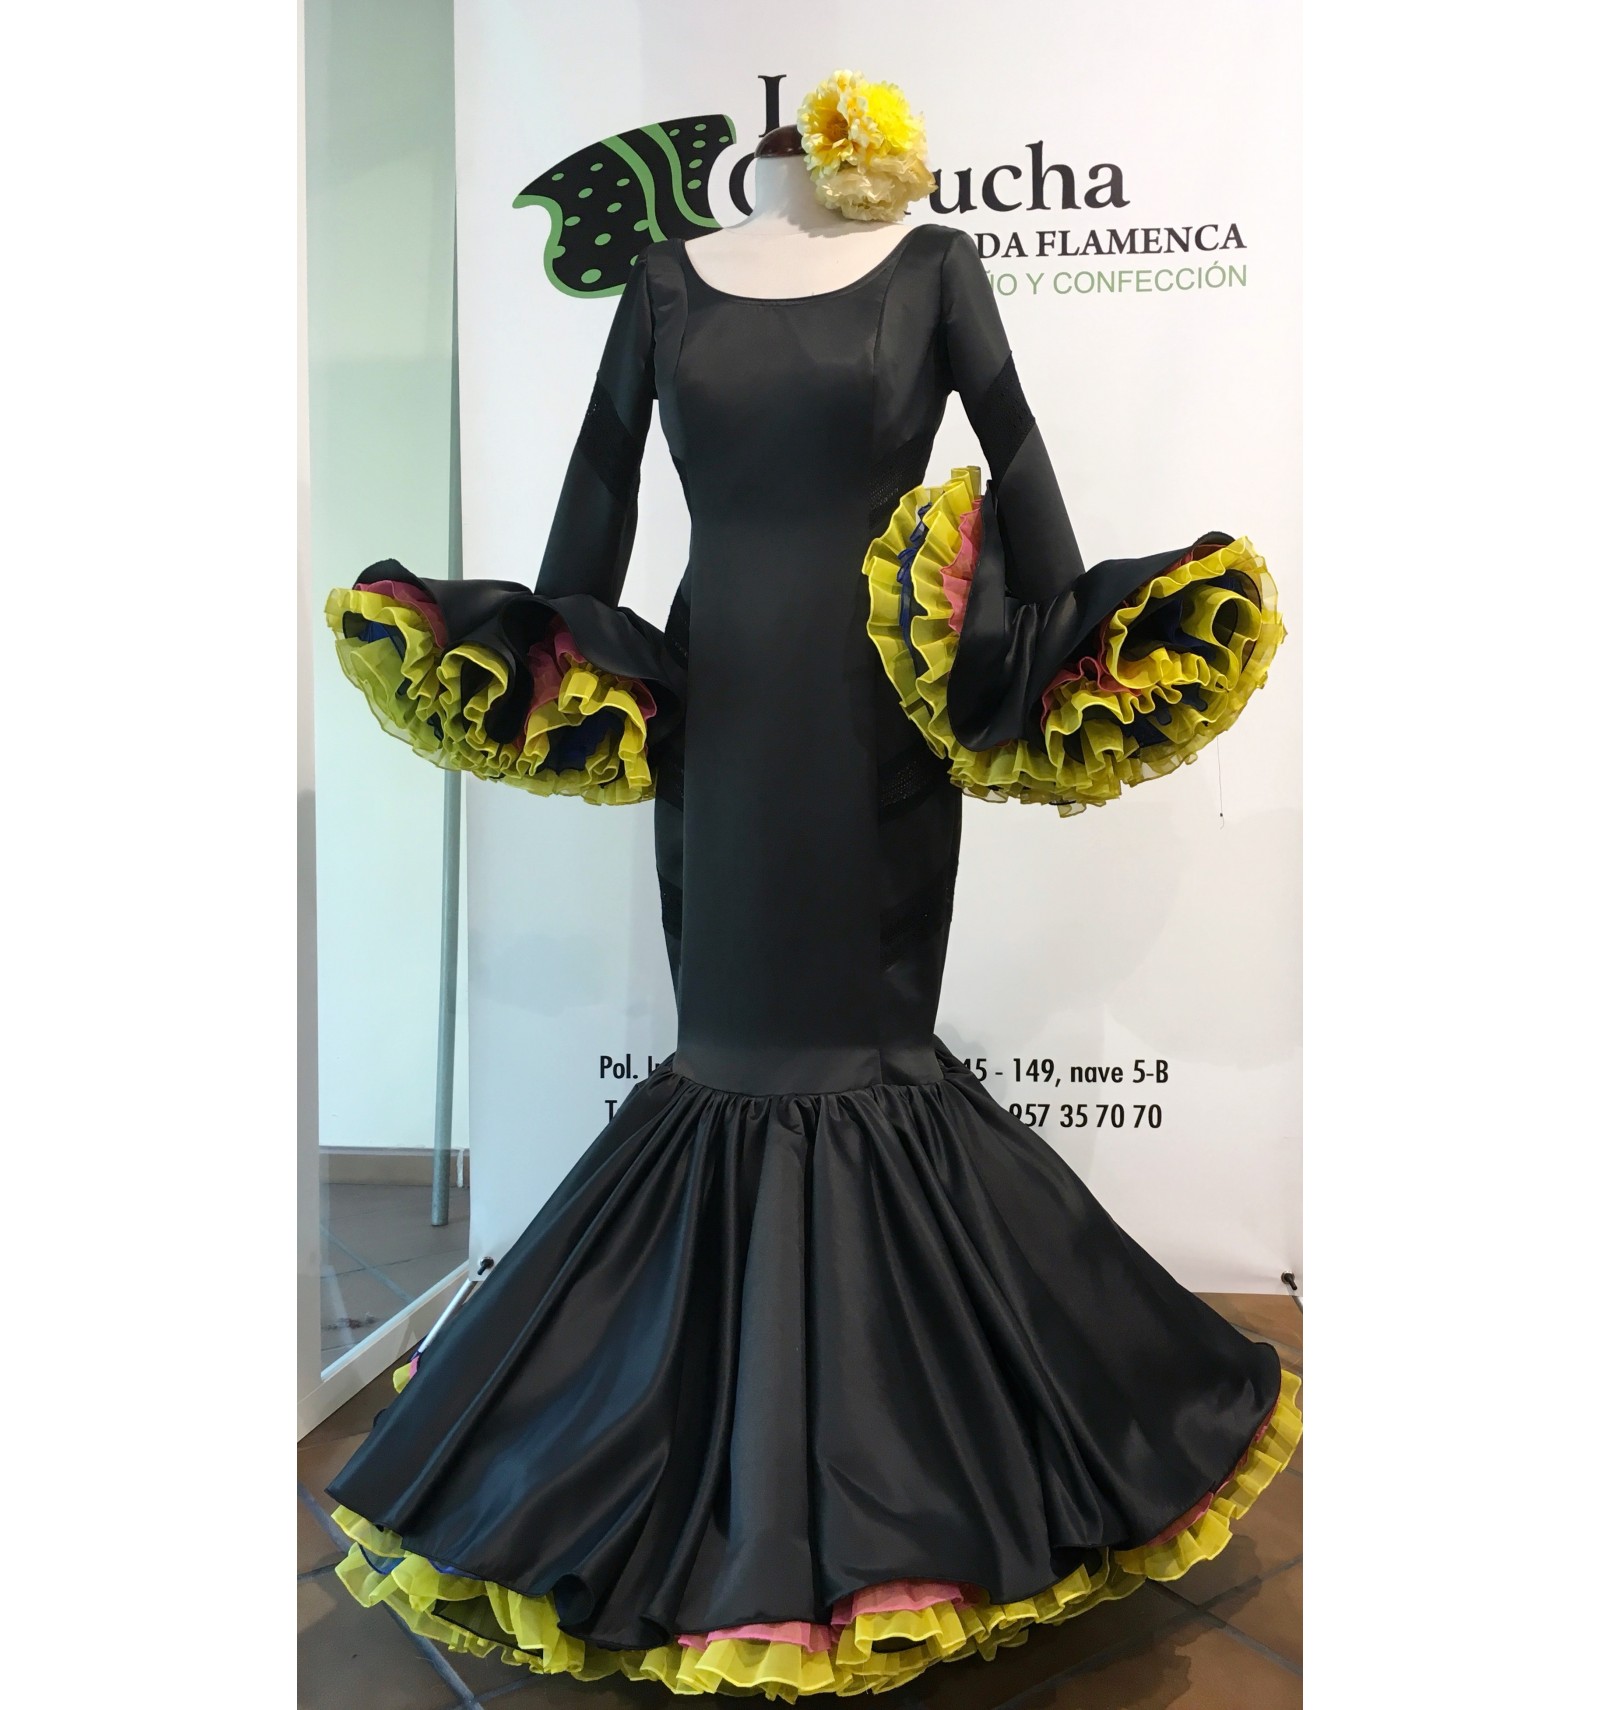 Traje flamenca - Carrucha Moda Flamenca